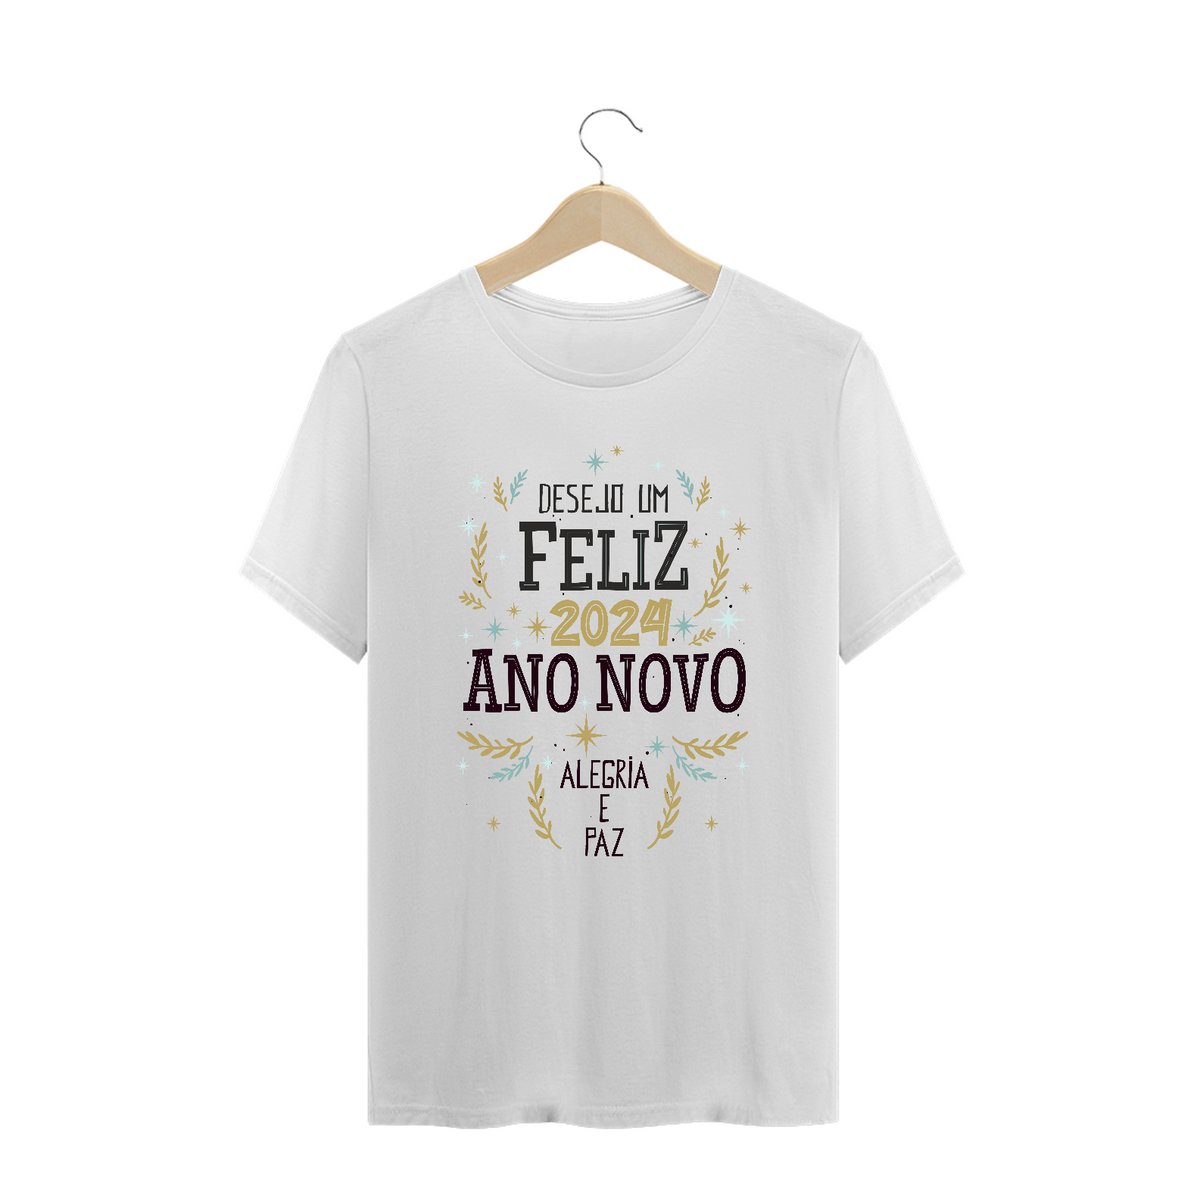 Nome do produto: Camiseta Plus Size Ano Novo 2024 Alegria e Paz